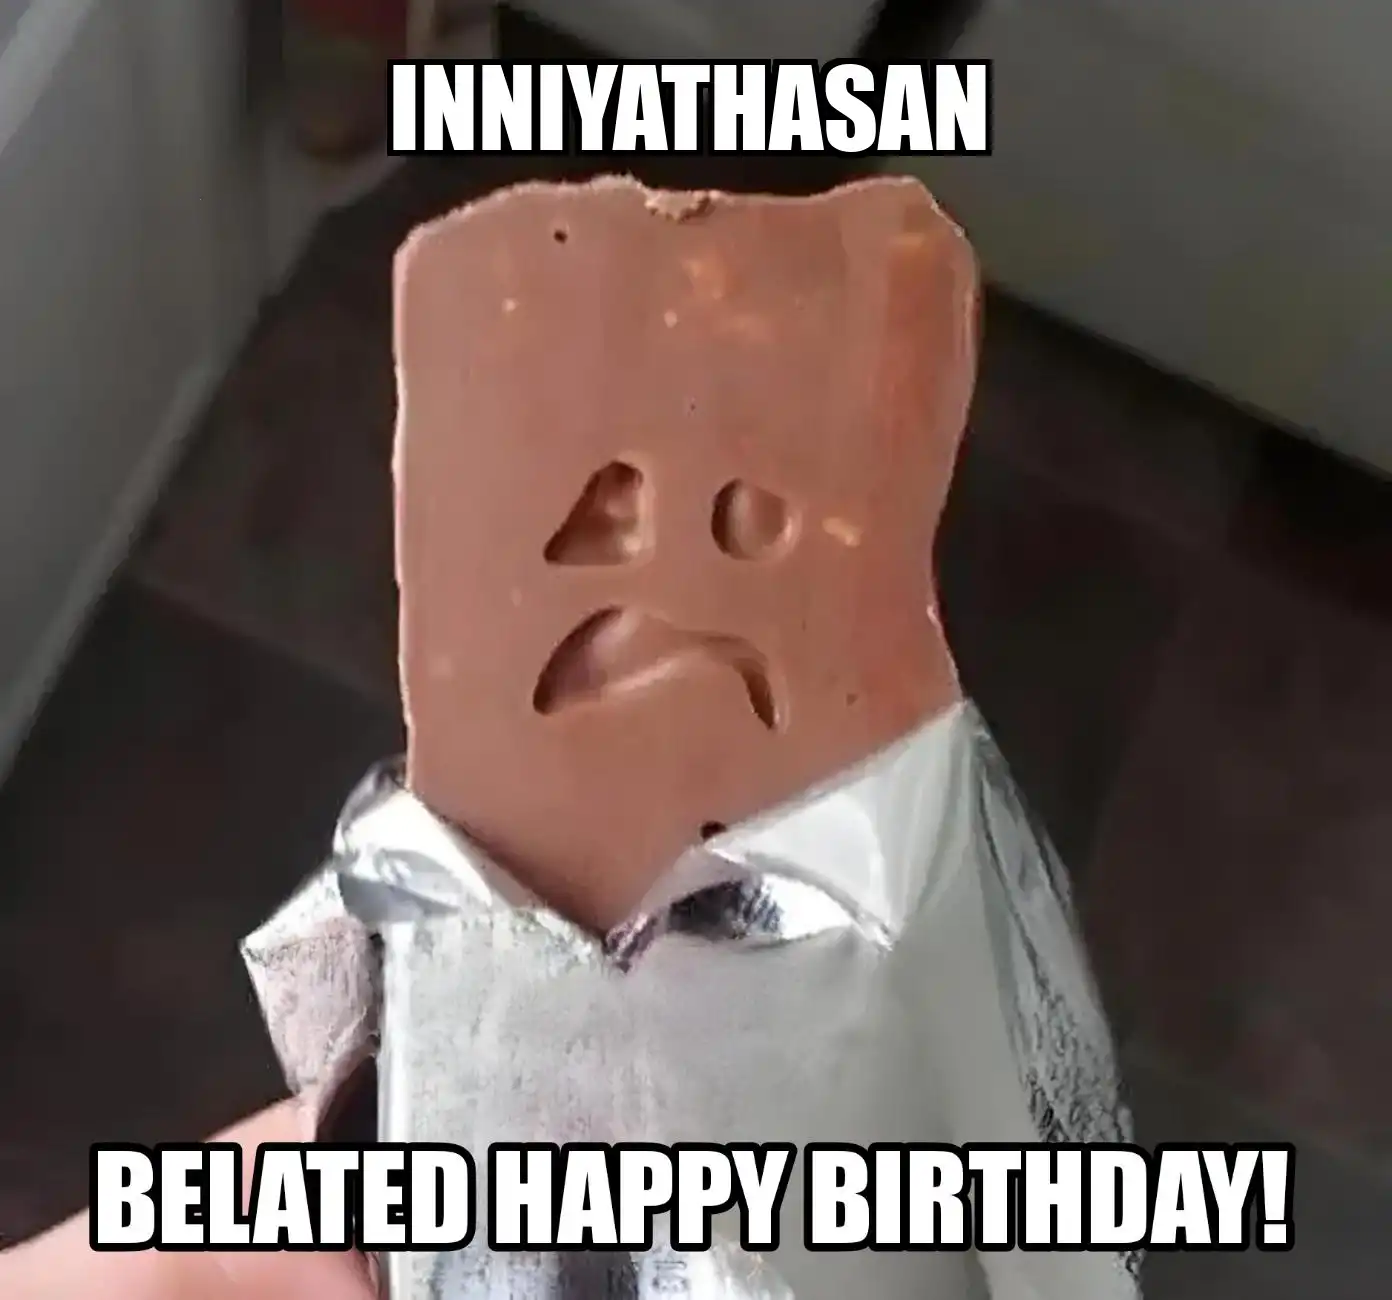 Happy Birthday Inniyathasan Belated Happy Birthday Meme